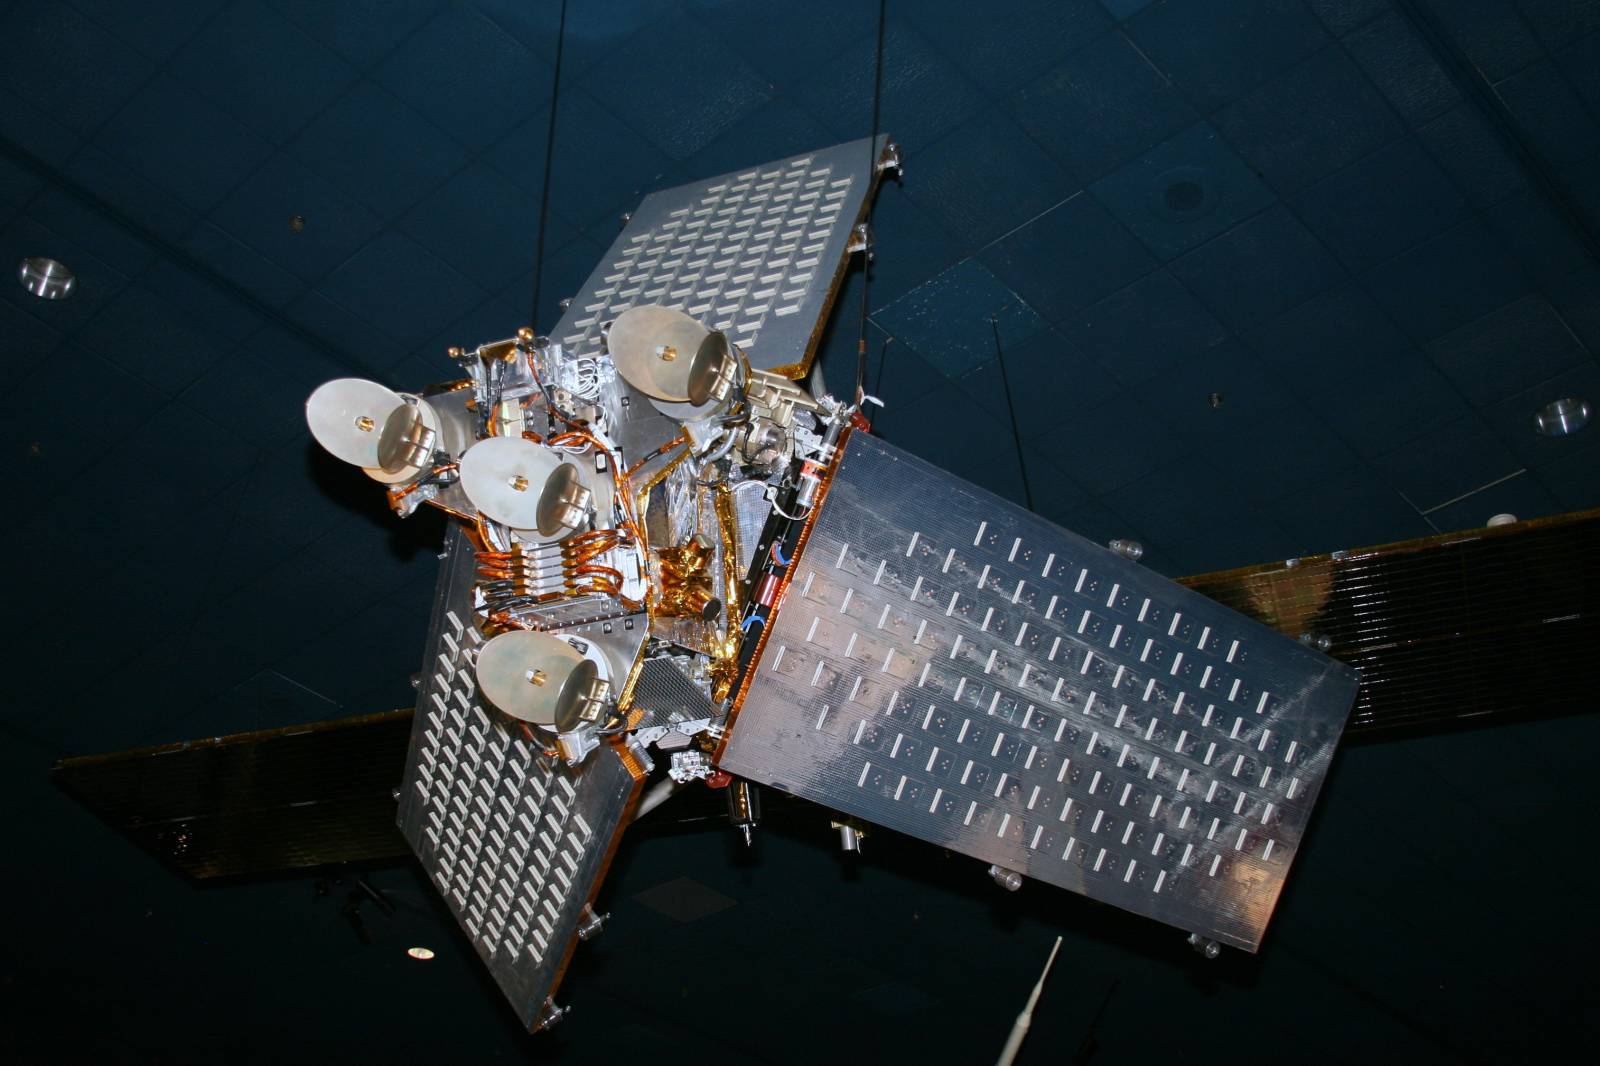 Das Satelliten-Internet von Musk ist endlich verfügbar, und das “globale WLAN”, das 5G untergräbt, kommt? - Iridium Satellite